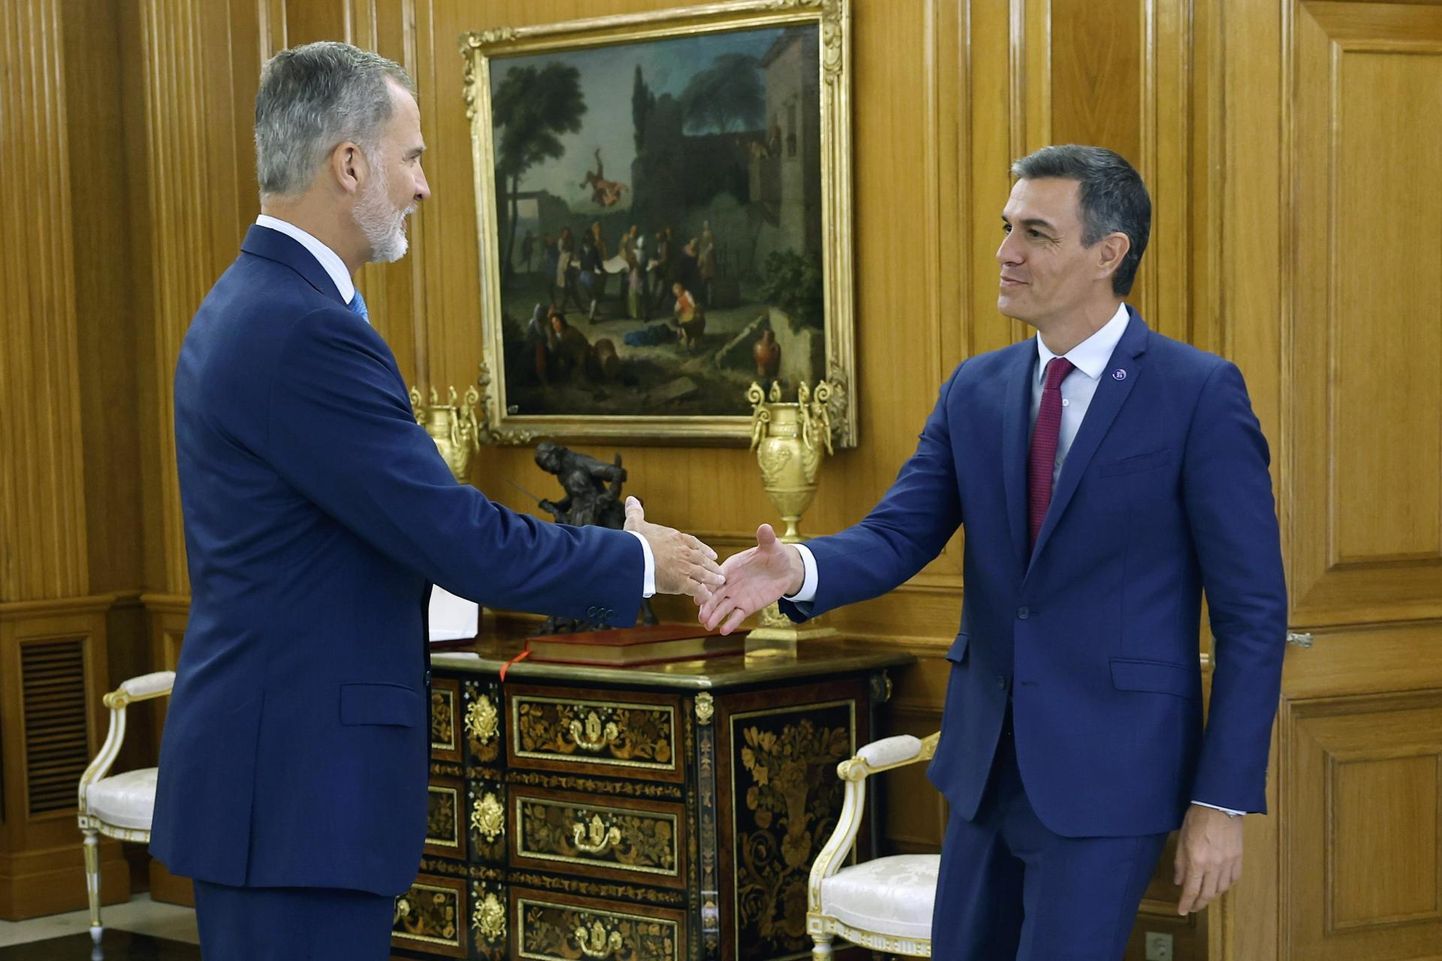 Viimasena parteiliidritest käis eile kuningas Felipe VI (vasakul) juures Zarzuela palees valimised võitnud Rahvapartei esimees Alberto Núñez Feijóo, kellel pole parlamendis aga piisavat toetust peaministriametisse kinnitamiseks.